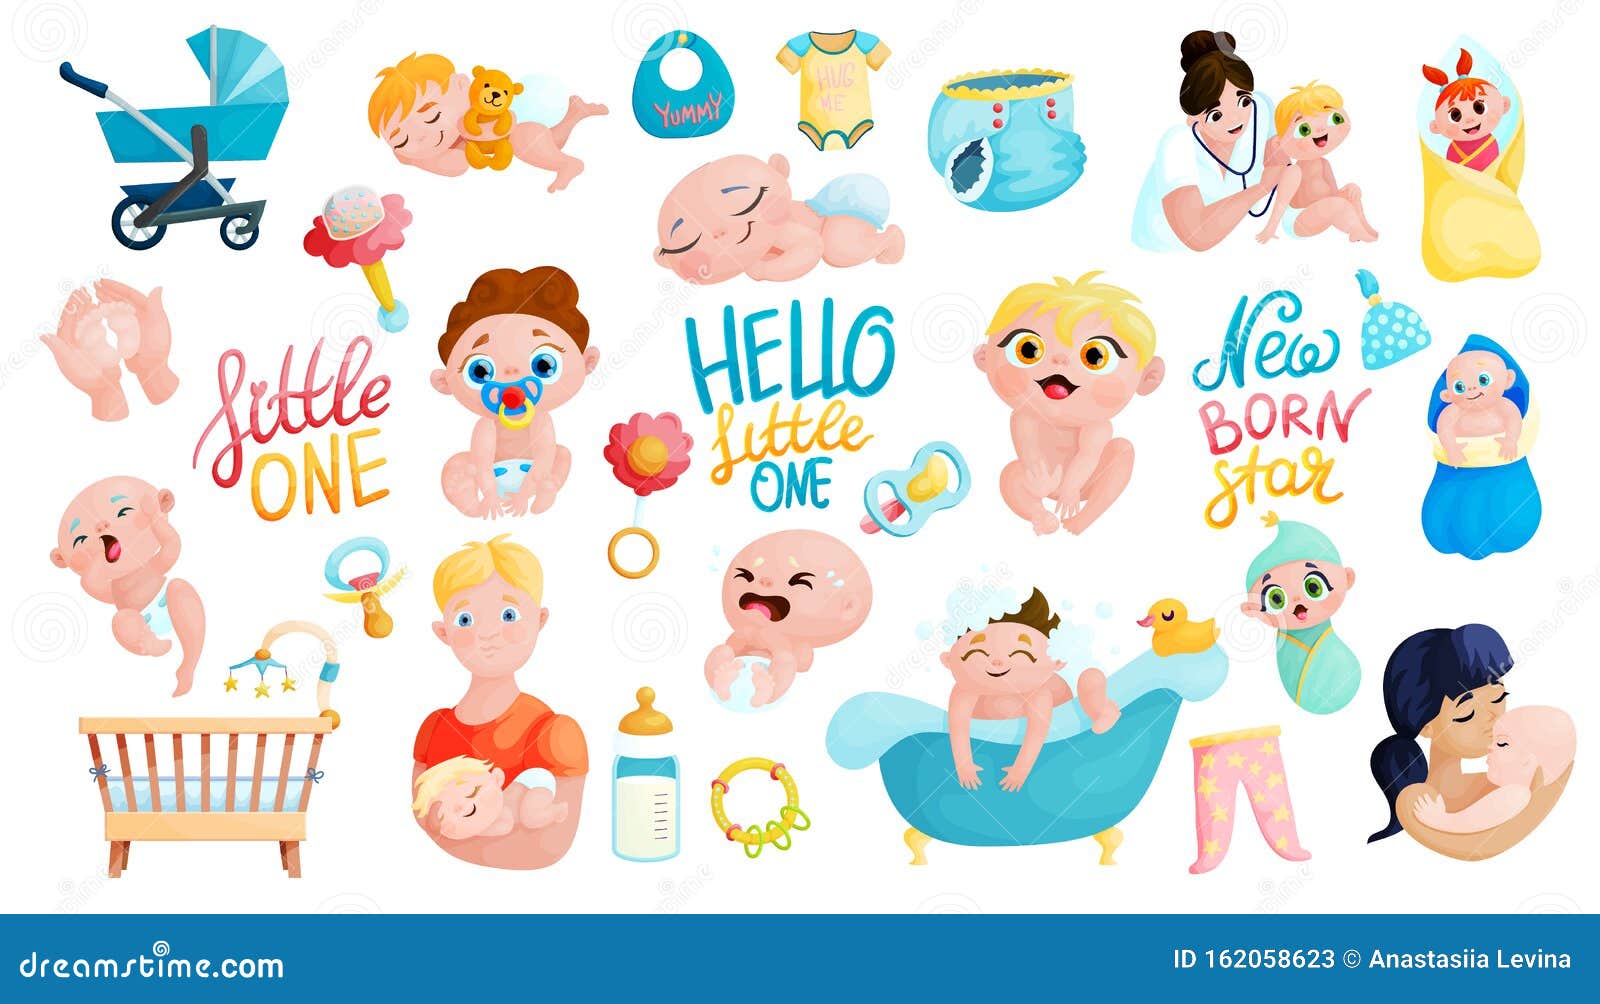 Cintas De Dibujos Animados Para Bebes Padres Y Accesorios Ilustracion Del Vector Ilustracion De Lindo Plano